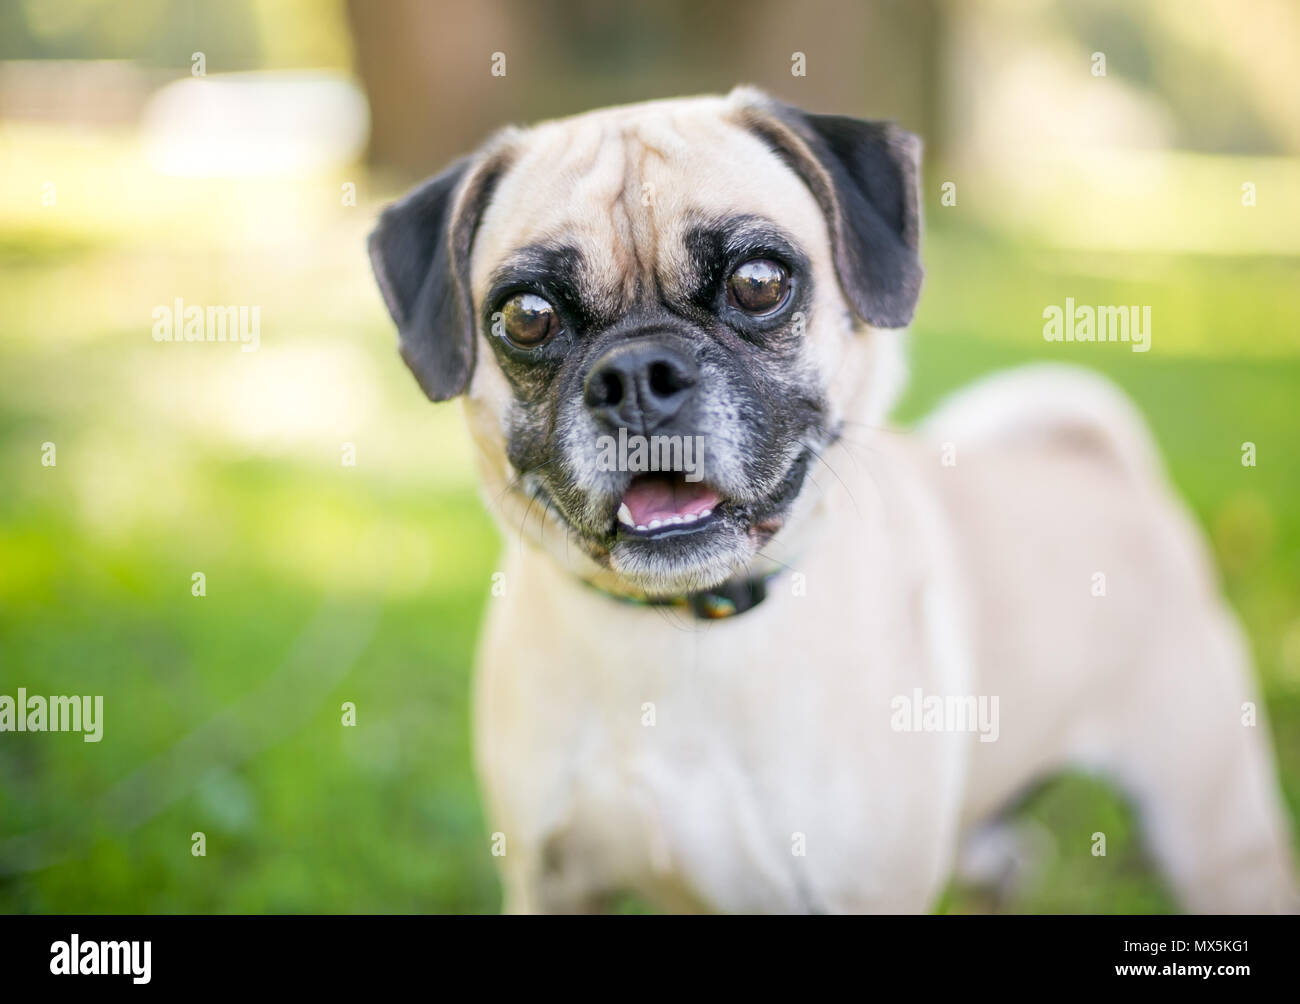 Eine niedliche Mops/Beagle Mischling Hund im Freien Stockfotografie - Alamy